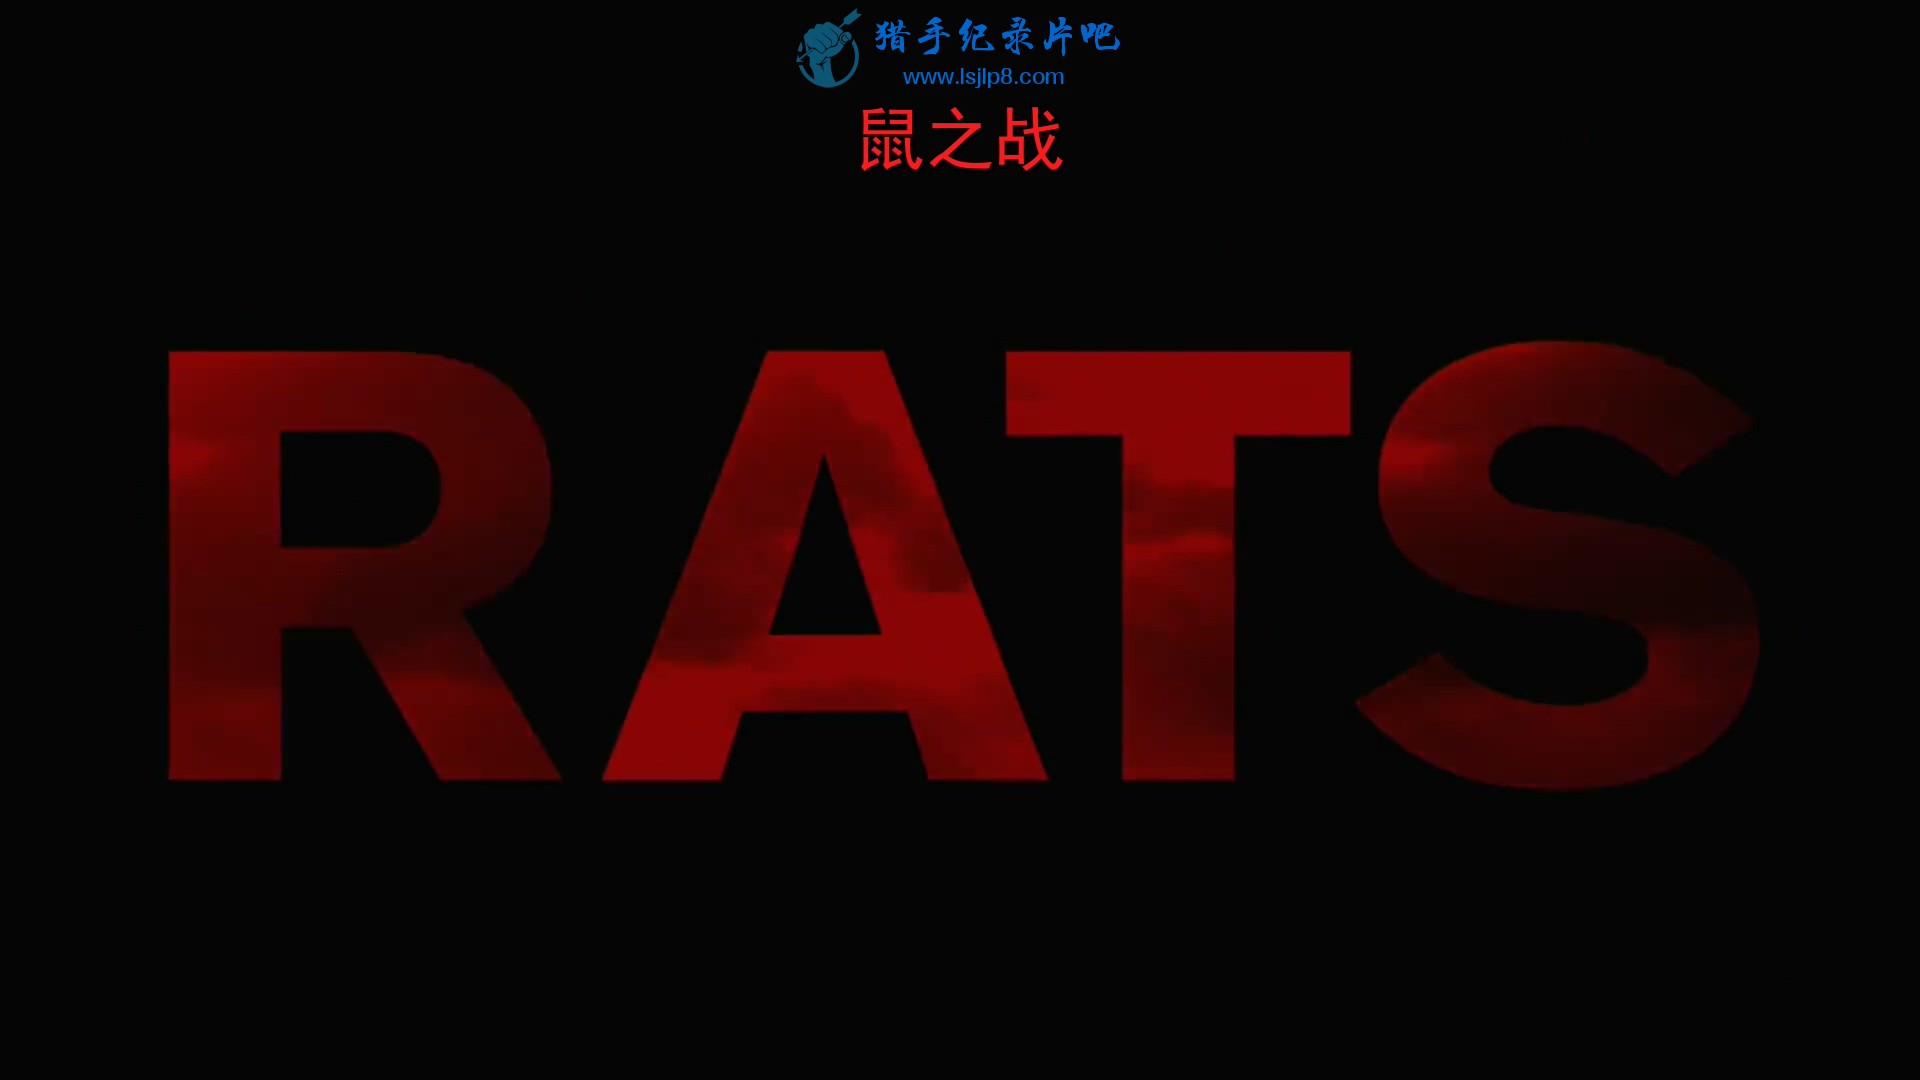 Rats.2016.1080p.WEBRip.AAC2.0.x264-monkee.mkv_20200131_115833.679.jpg